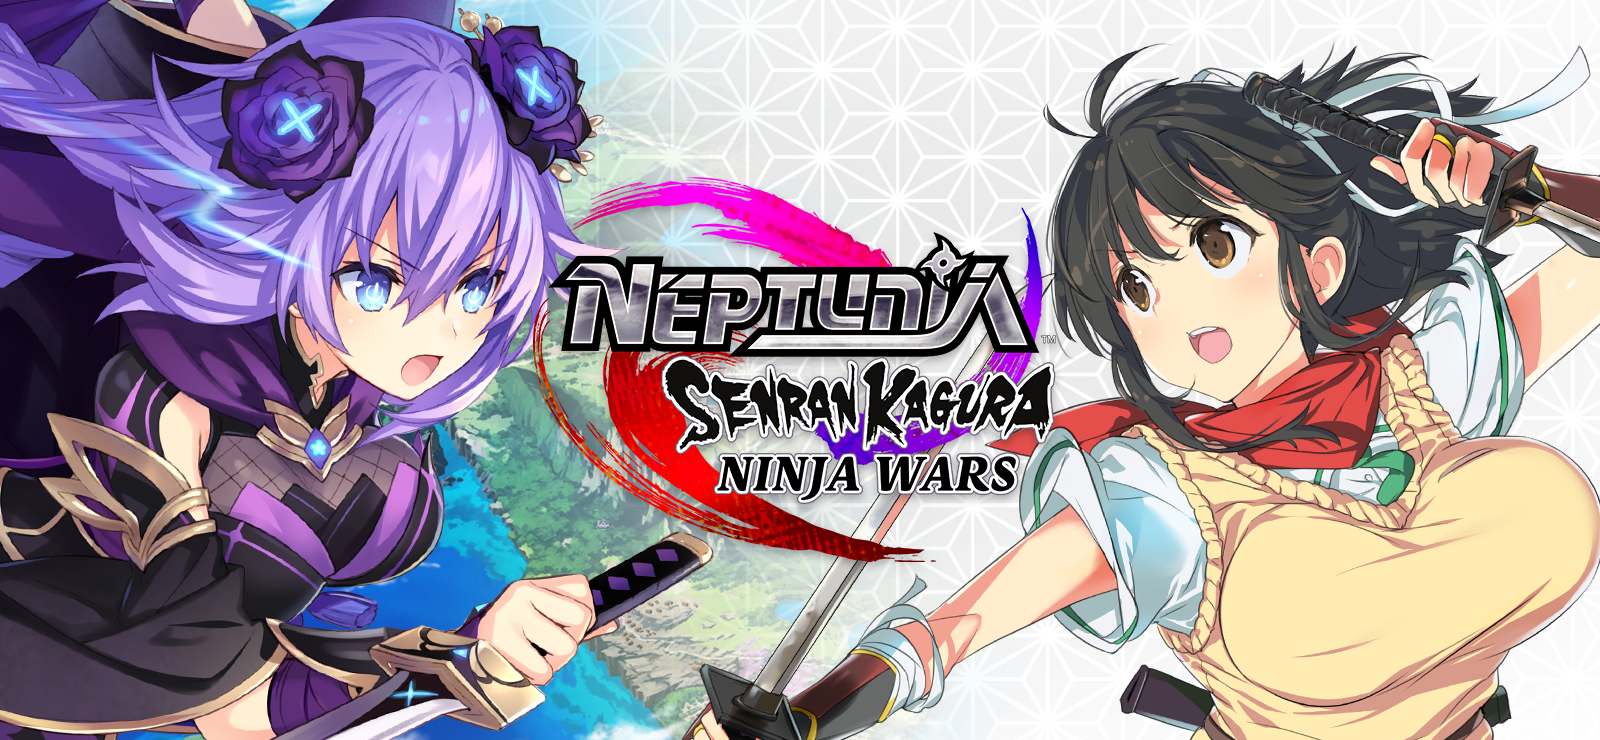 Neptunia X Senran Kagura: Ninja Wars